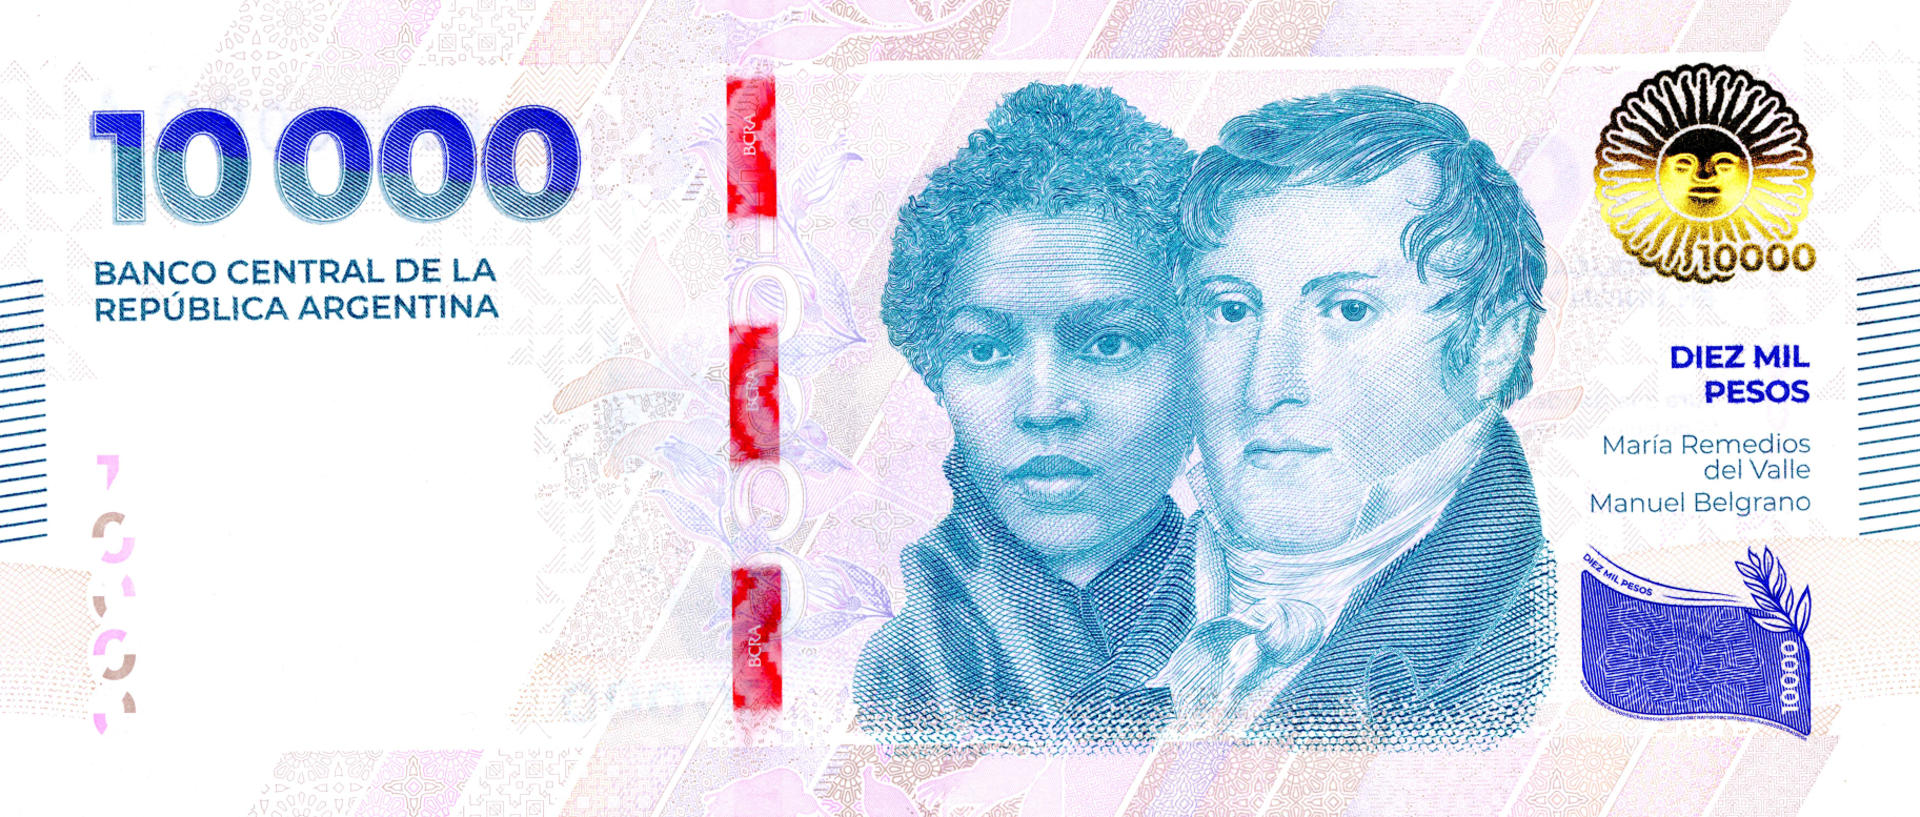 Detalle. El prócer Manuel Belgrano y la heroína María Remedios del Valle están en el billete. EFE